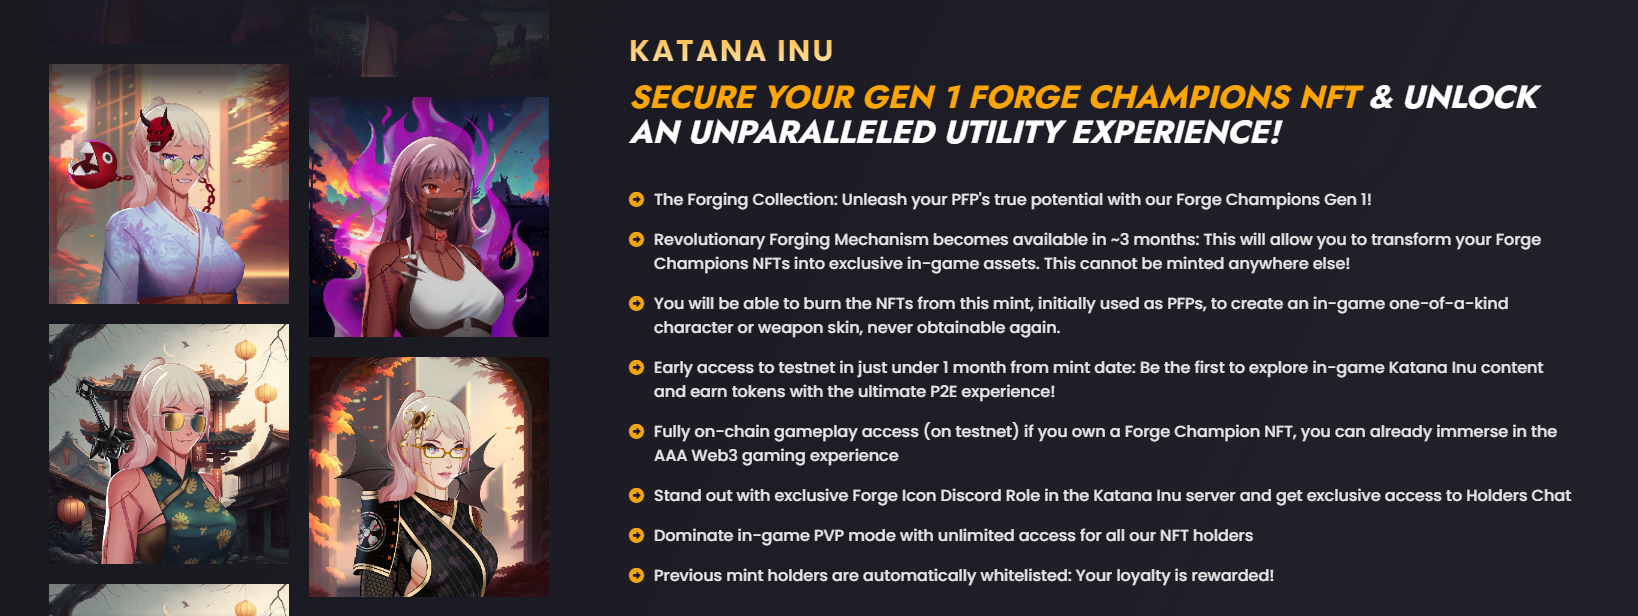 Información de NFT de Katana Inu